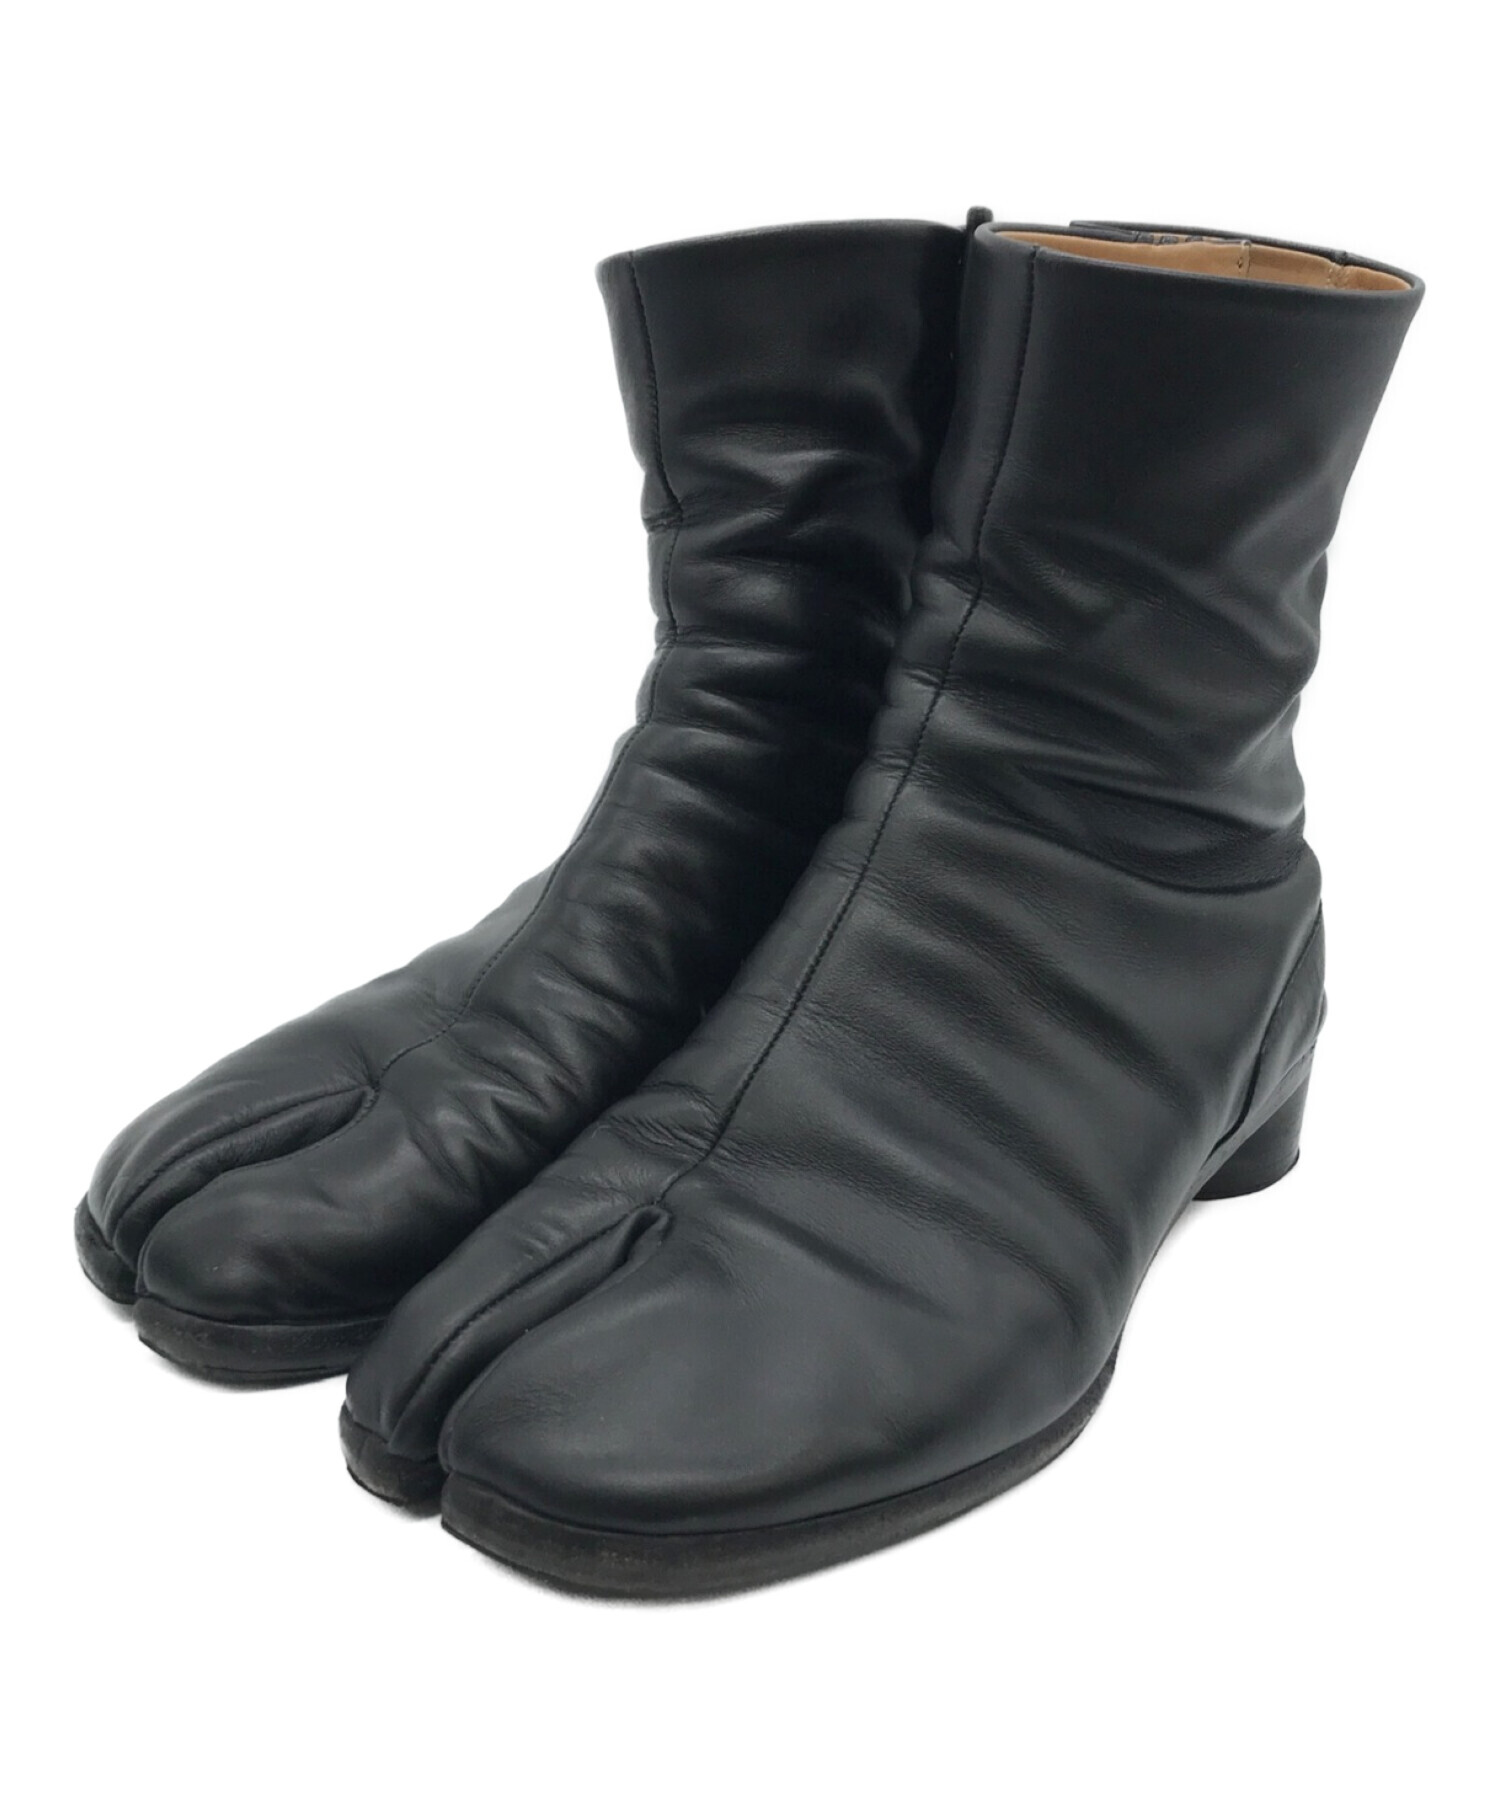 Maison Margiela 22 (メゾン マルジェラ 22) TABI BOOTS/足袋ブーツ ブラック サイズ:40